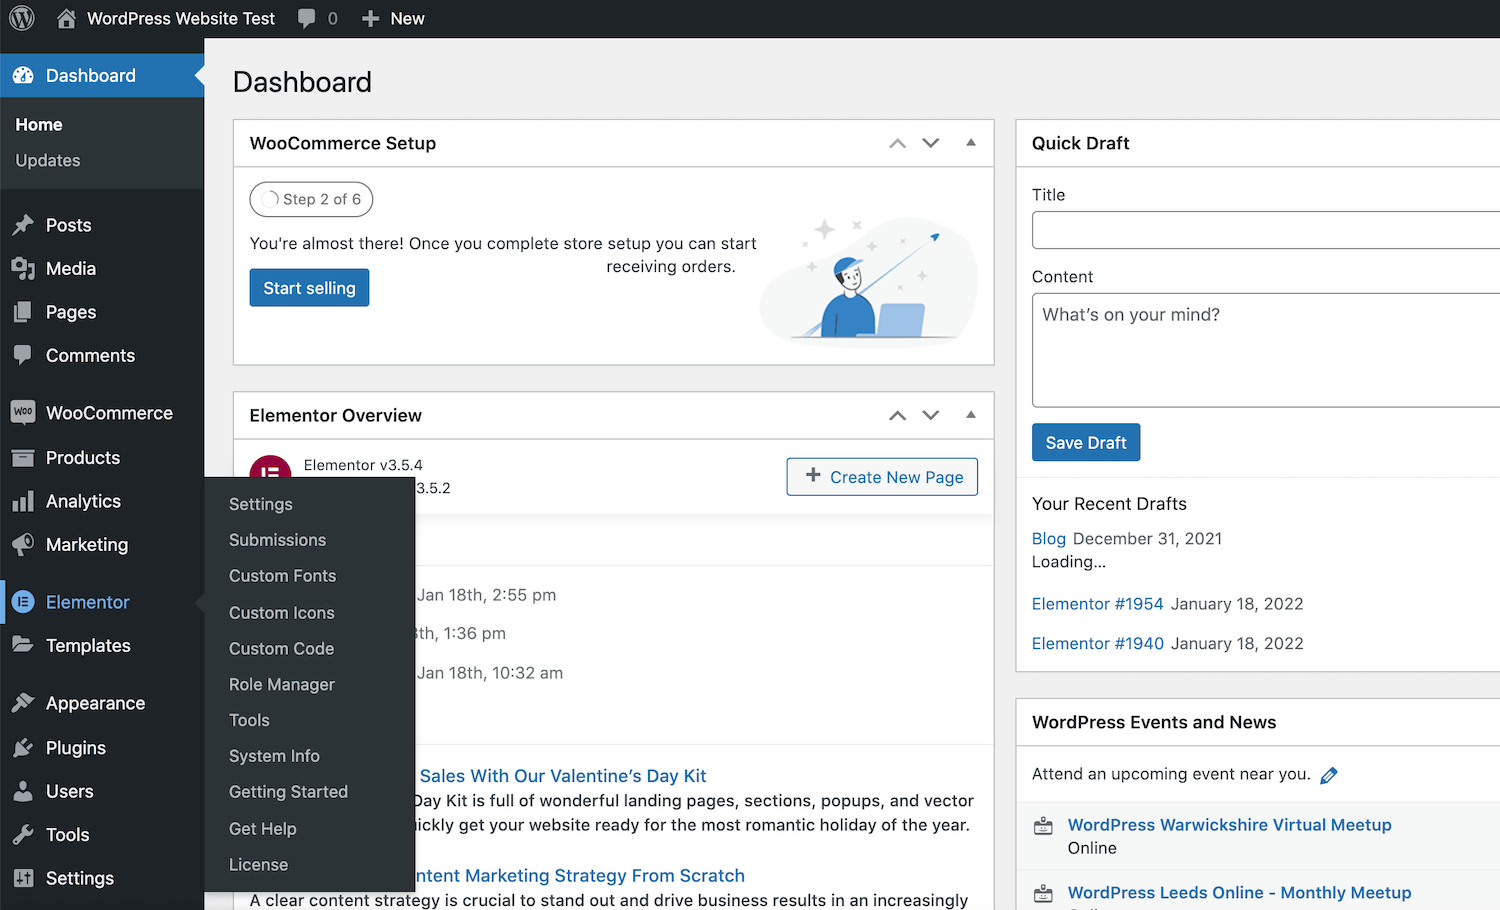 Die Elementor Option wird dem WordPress Dashboard hinzugefügt, sobald sie aktiviert ist